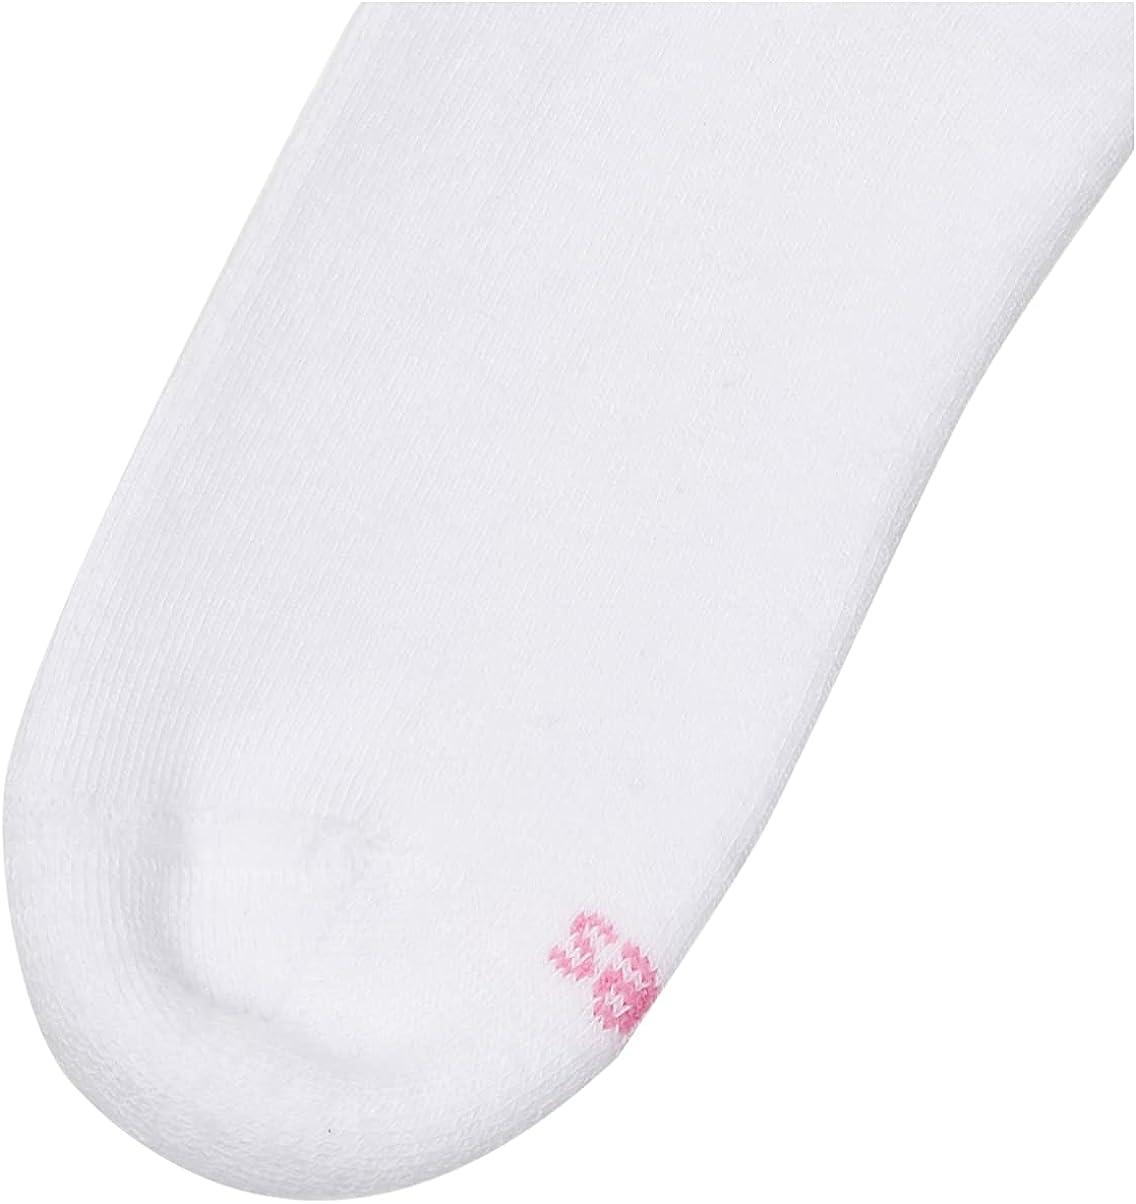 Hanes Women's White Ankle Socks, 6-pk